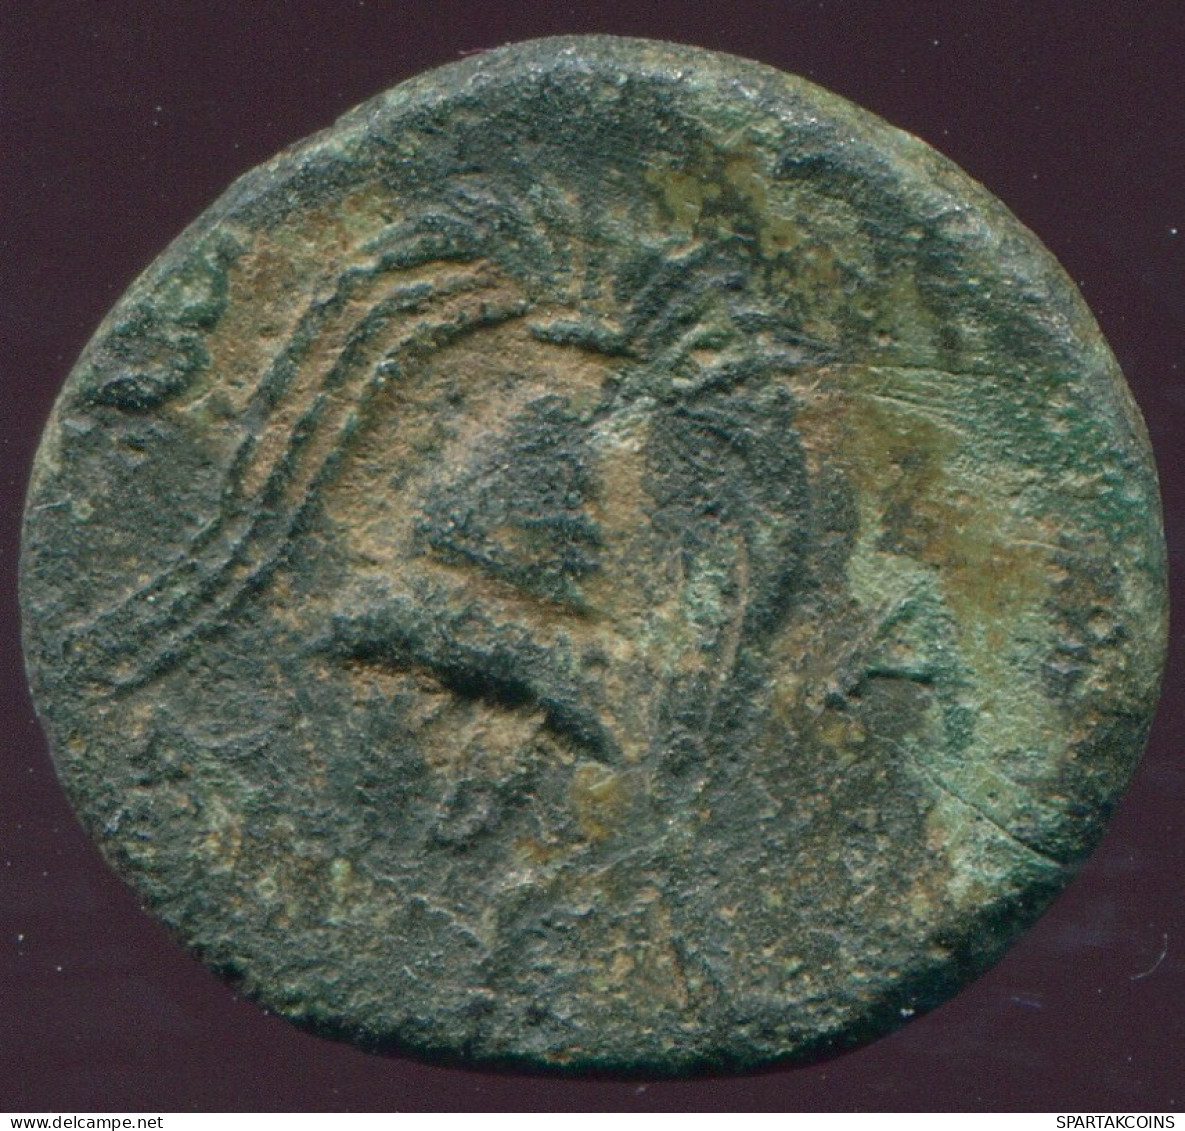 MACEDONIAN SHIELD CLUB BOW HELMET GREEK Coin 3.78g/16.29mm #GRK1209.7.U.A - Griekenland